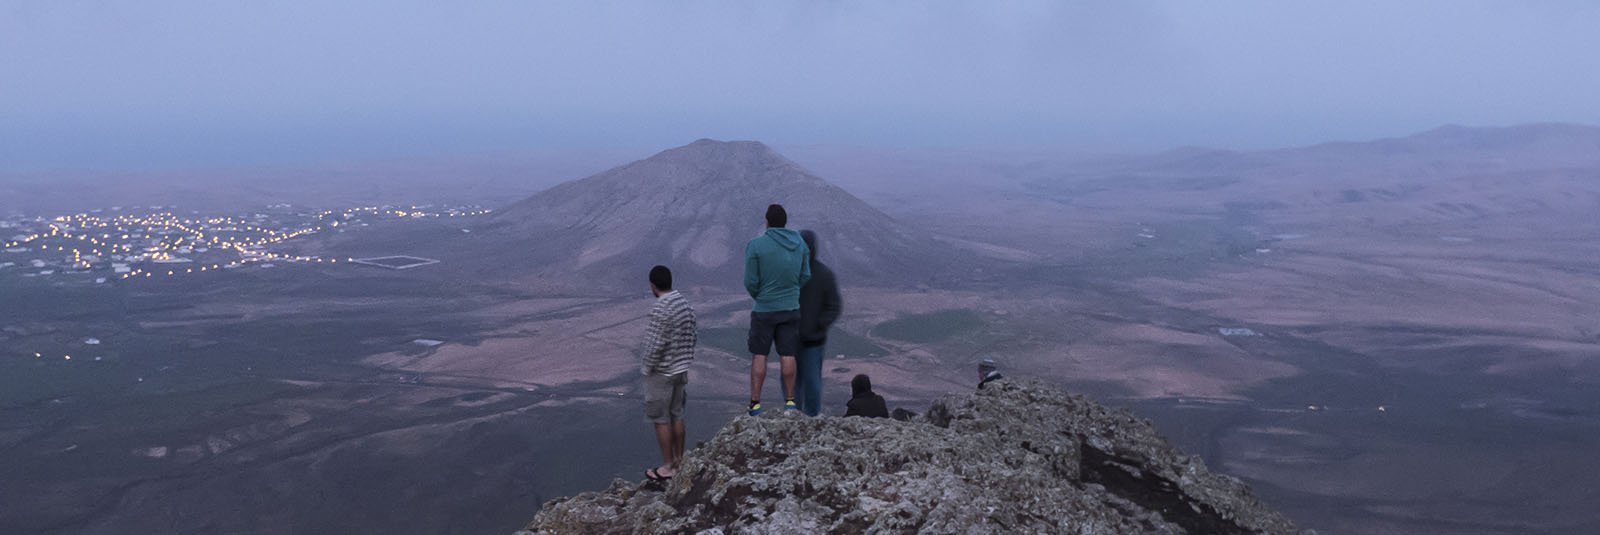 Wandern + Trekking auf Fuerteventura: Wintersonnwend am Montaña de Enmedio.